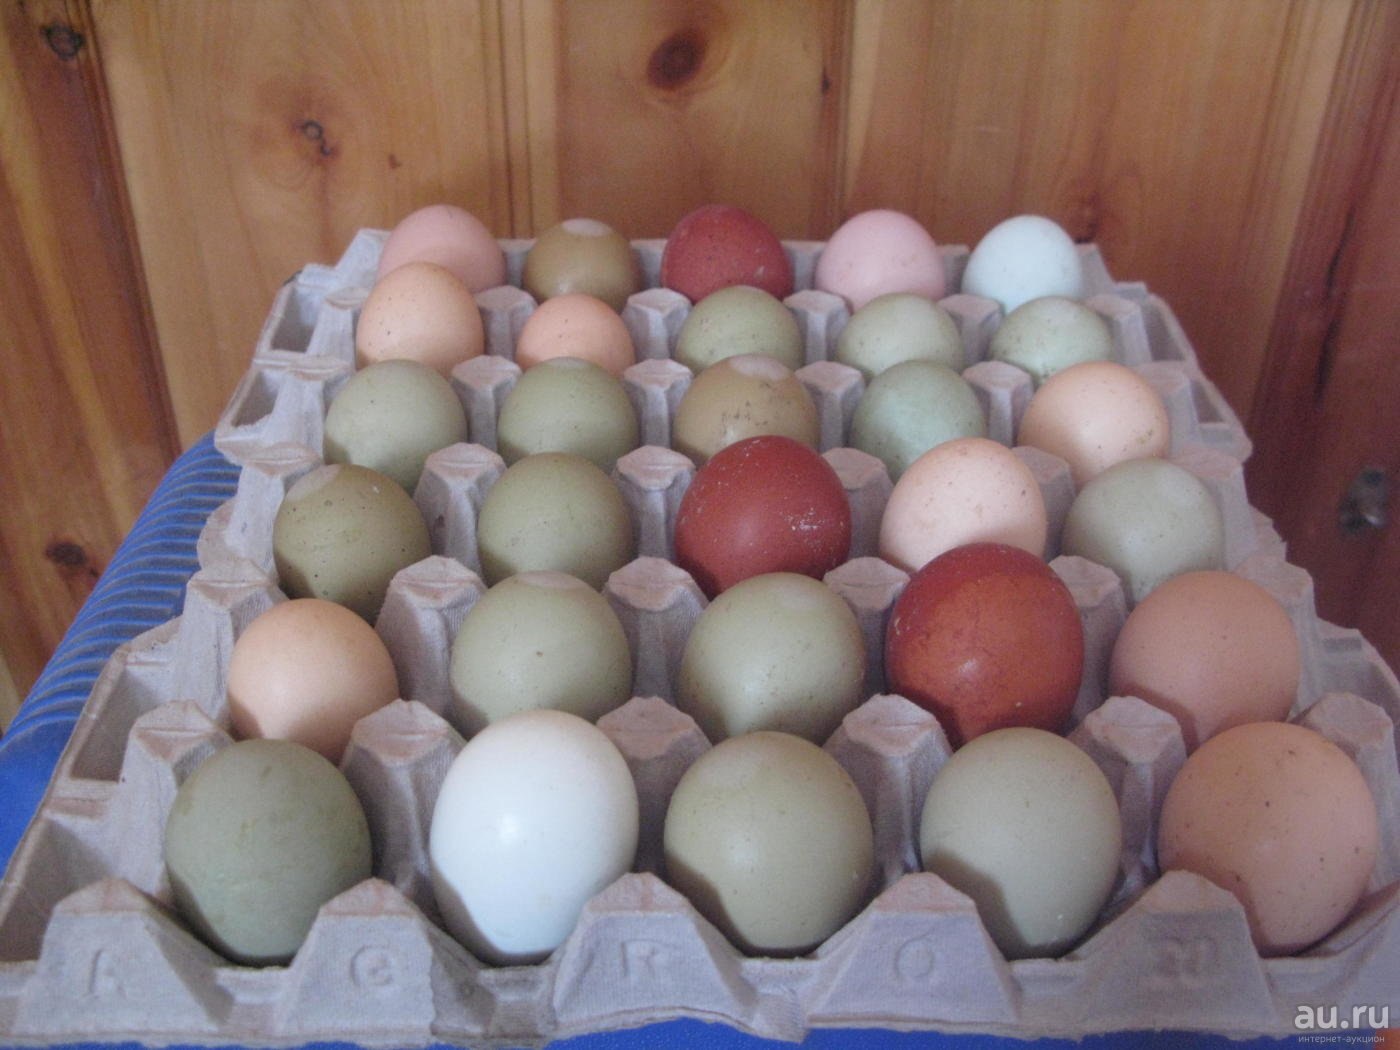 Куры которые несут цветные яйца породы. Цветные яйца куриные. Разноцветные куриные яйца. Цветные яйца у кур. Куры с цветными яйцами.